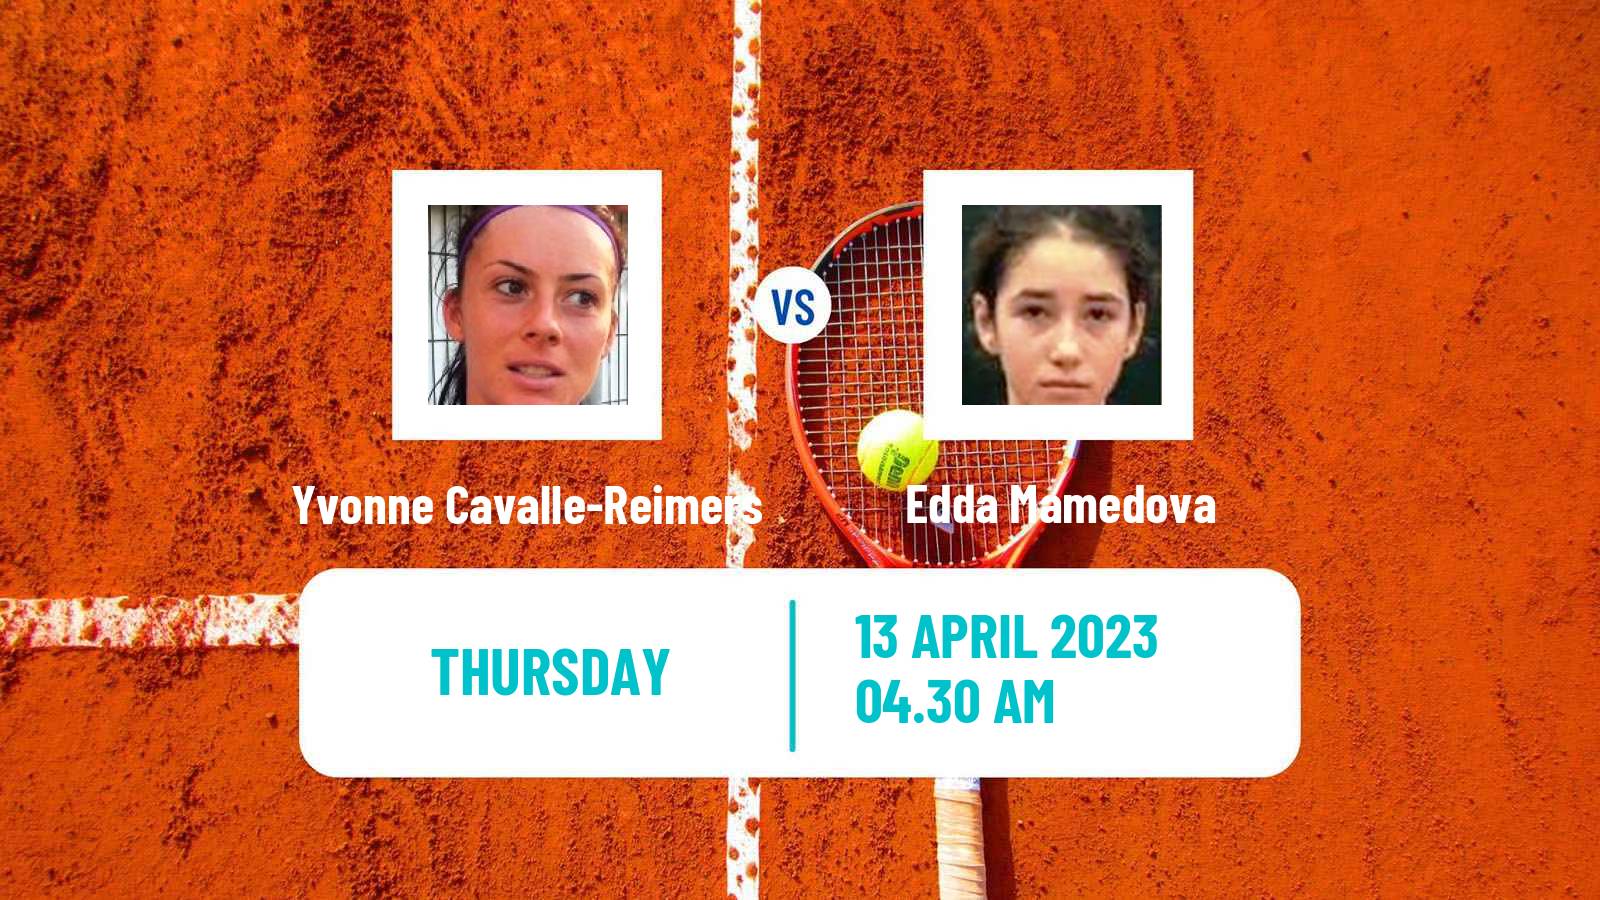 Tennis ITF Tournaments Yvonne Cavalle-Reimers - Edda Mamedova